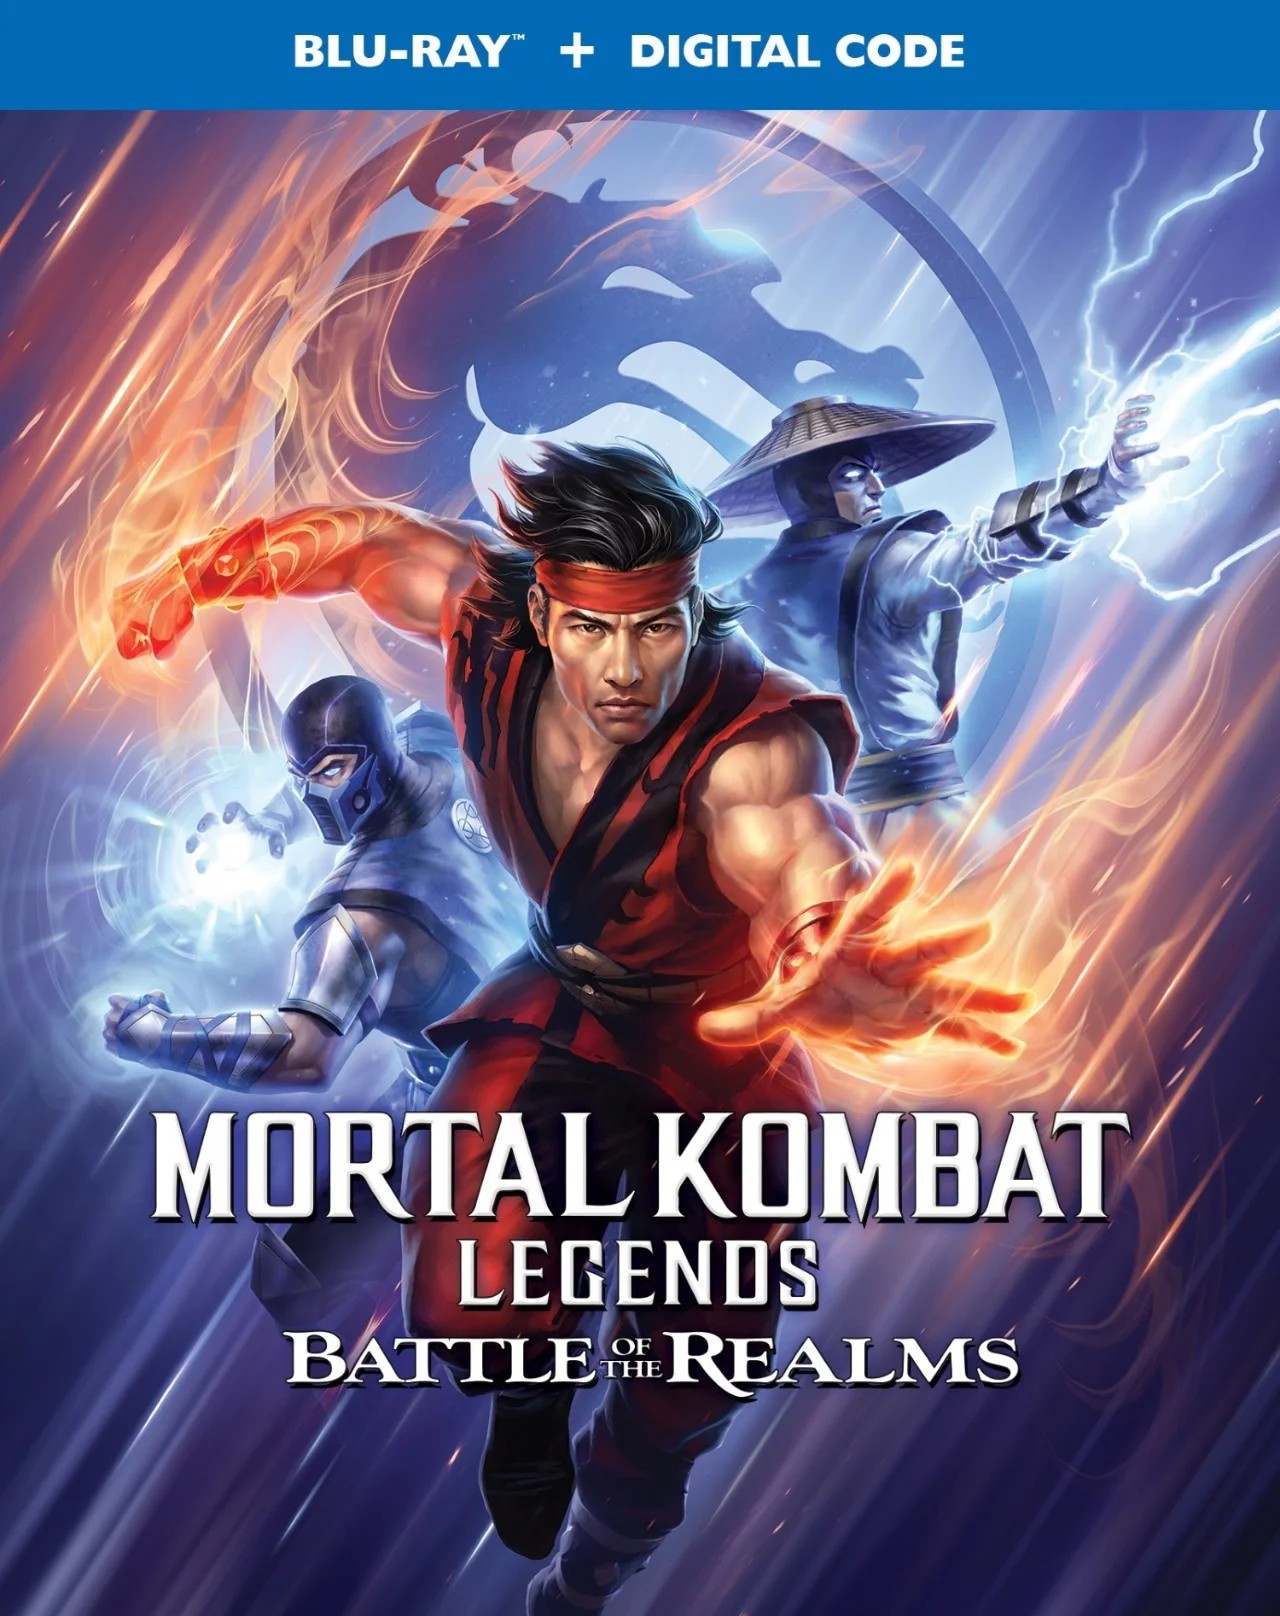 Mortal Kombat Legends: Filme animado +18 ganhará uma sequência